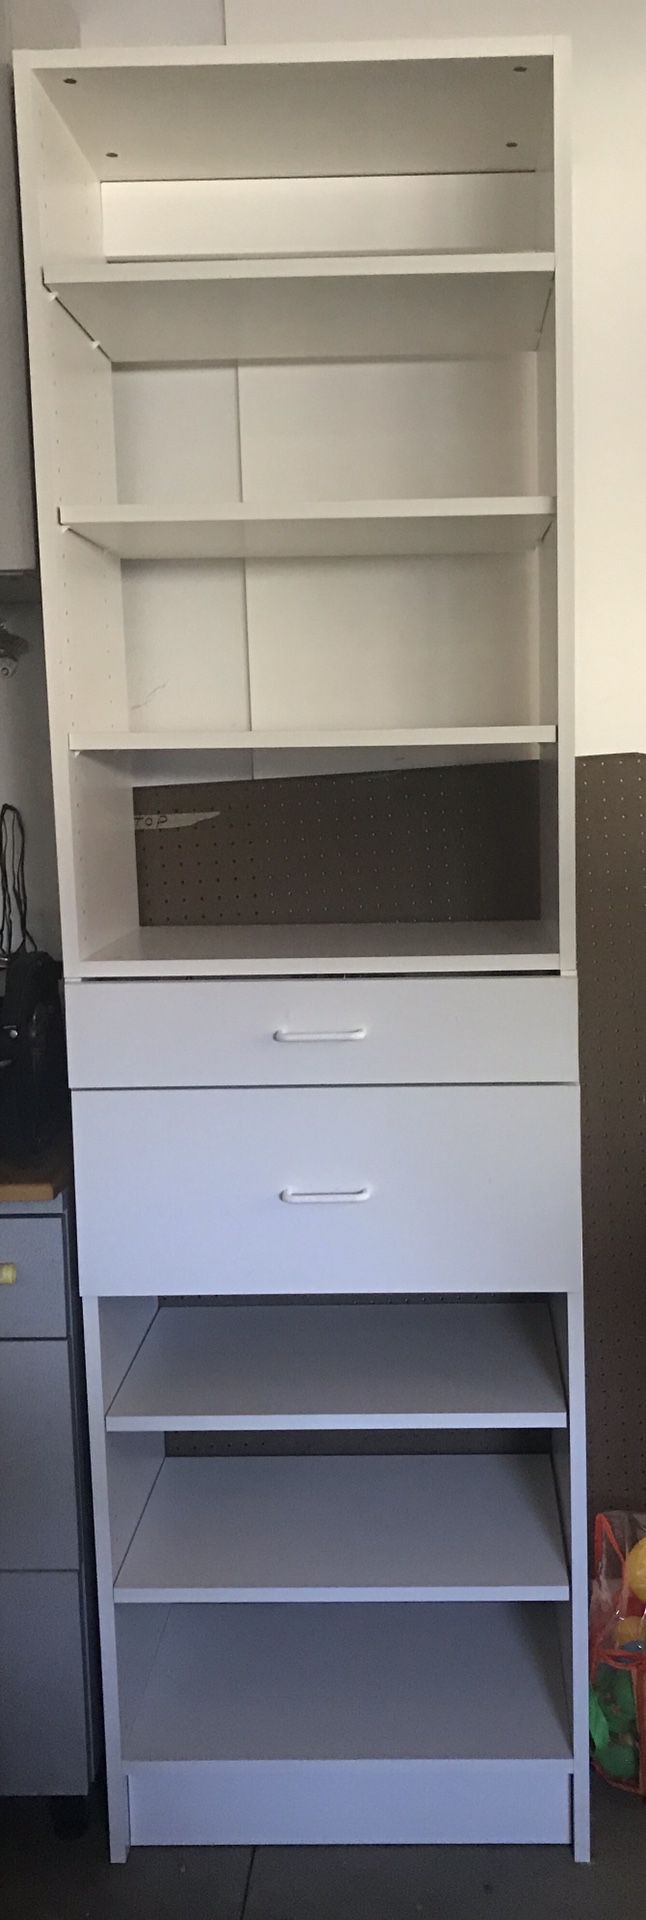 Closet or garage cabinet